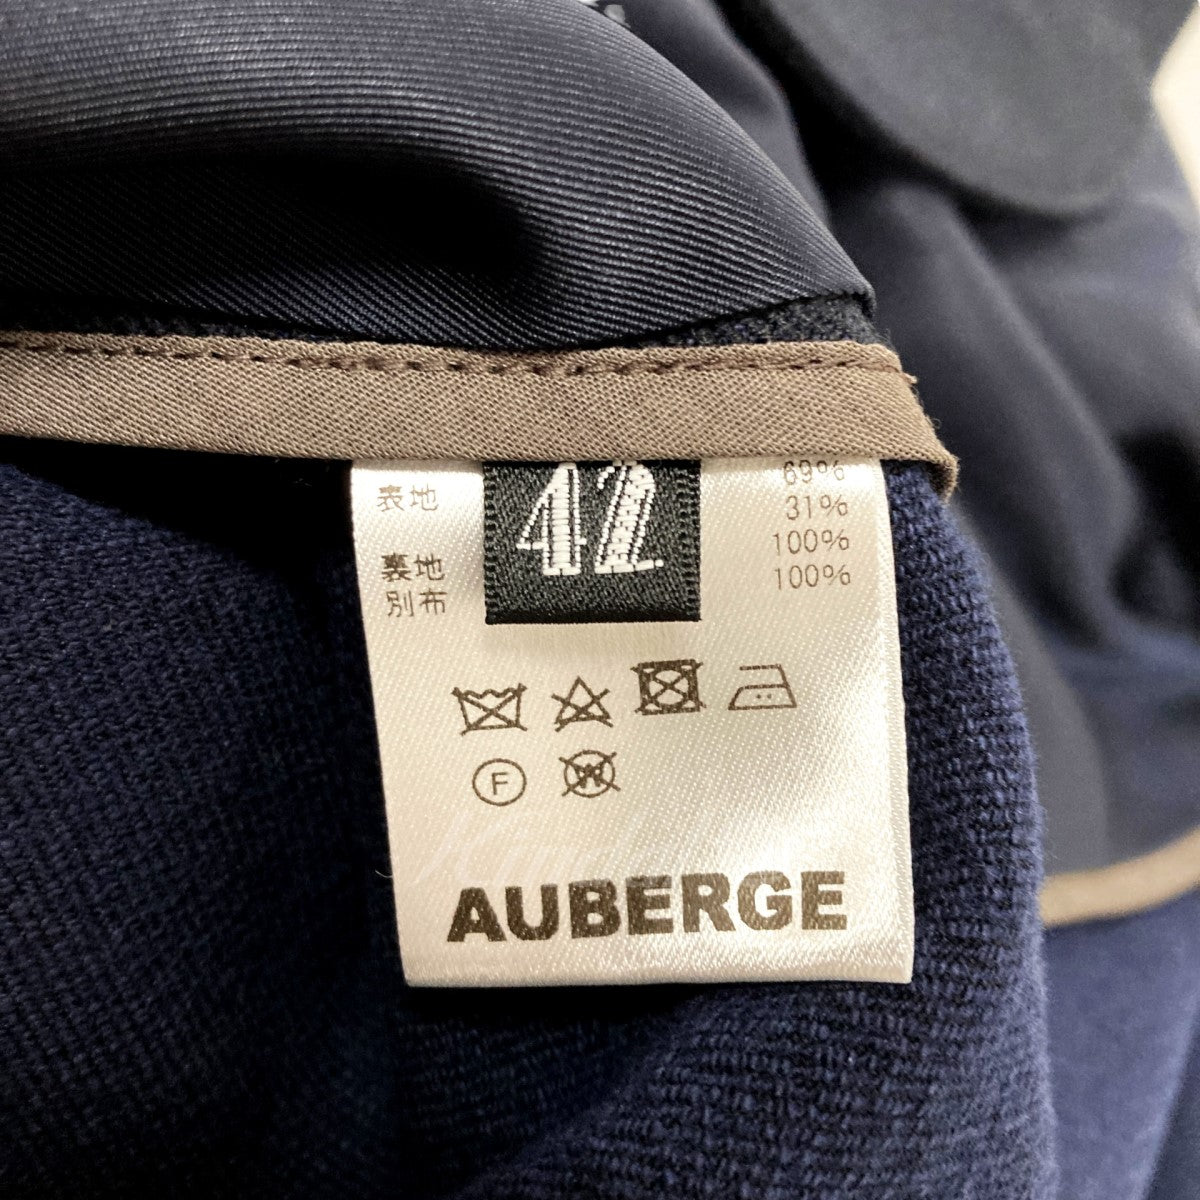 AUBERGE(オーベルジュ) BESSON テーラードジャケット ネイビー サイズ 